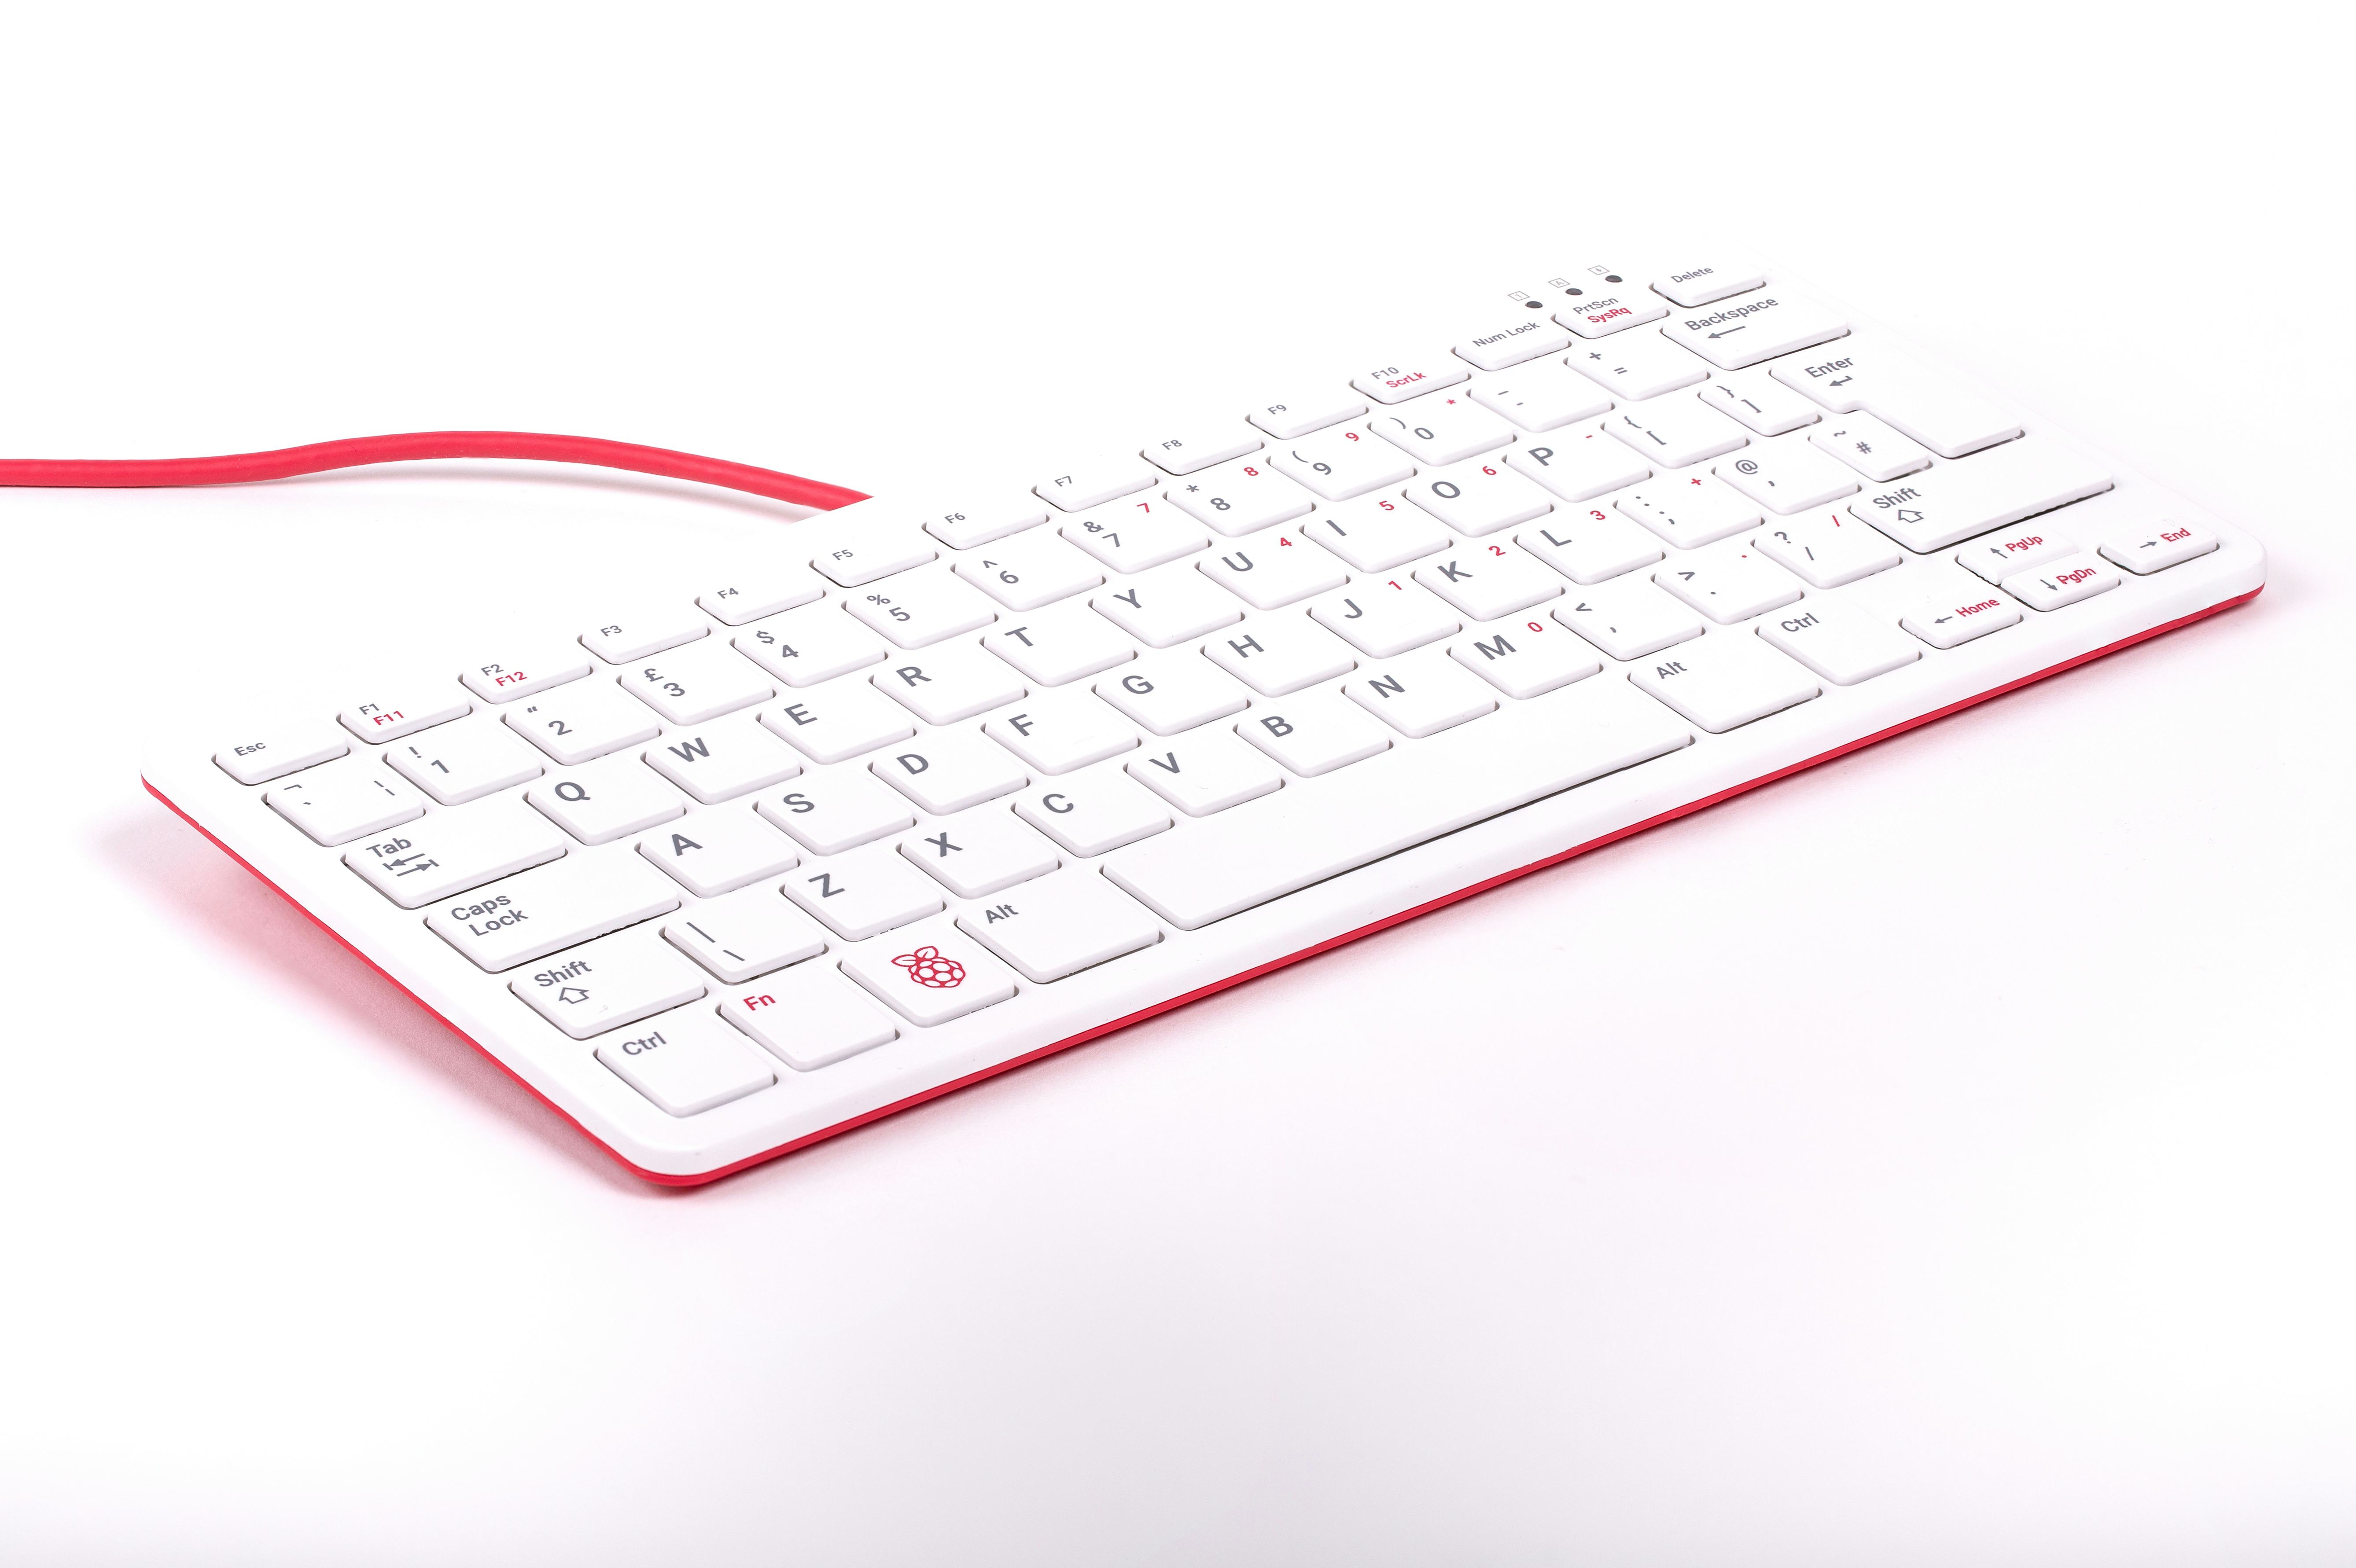 Buy a Raspberry Pi Keyboard and Hub – Raspberry Pi